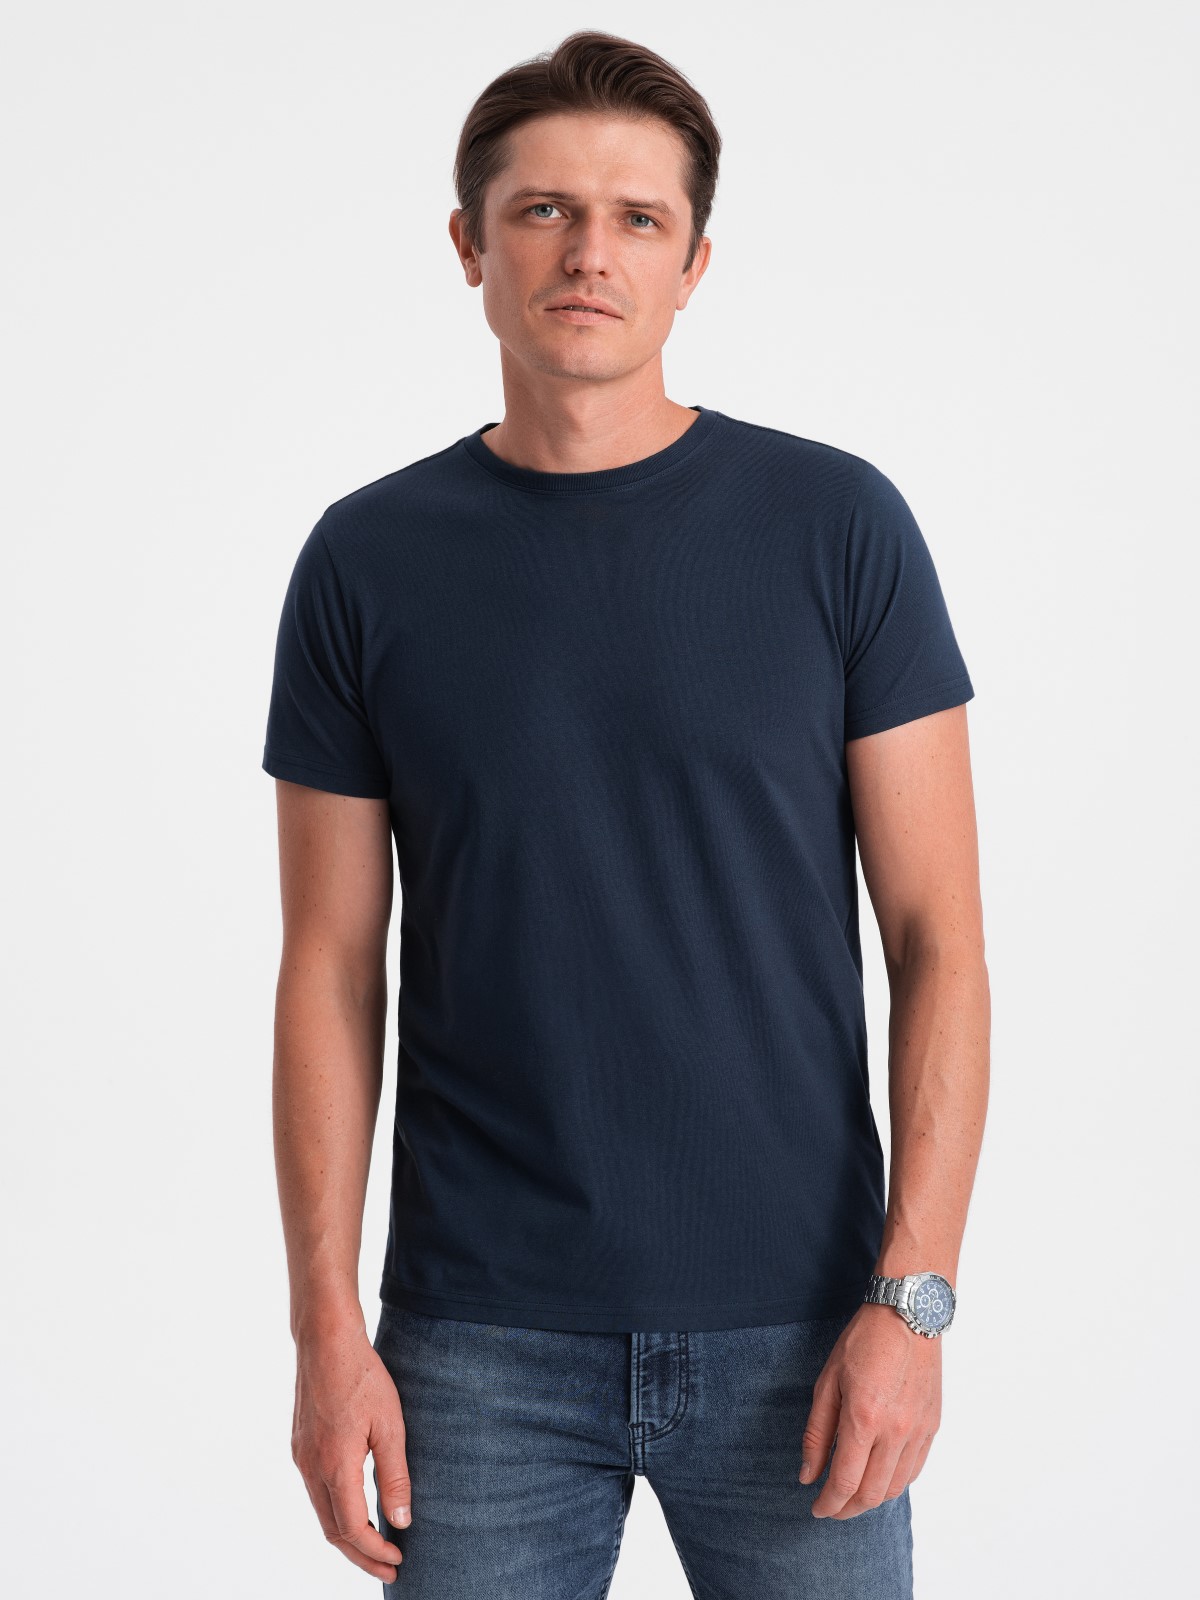 T-shirt Heren - Navy - VAMIGO